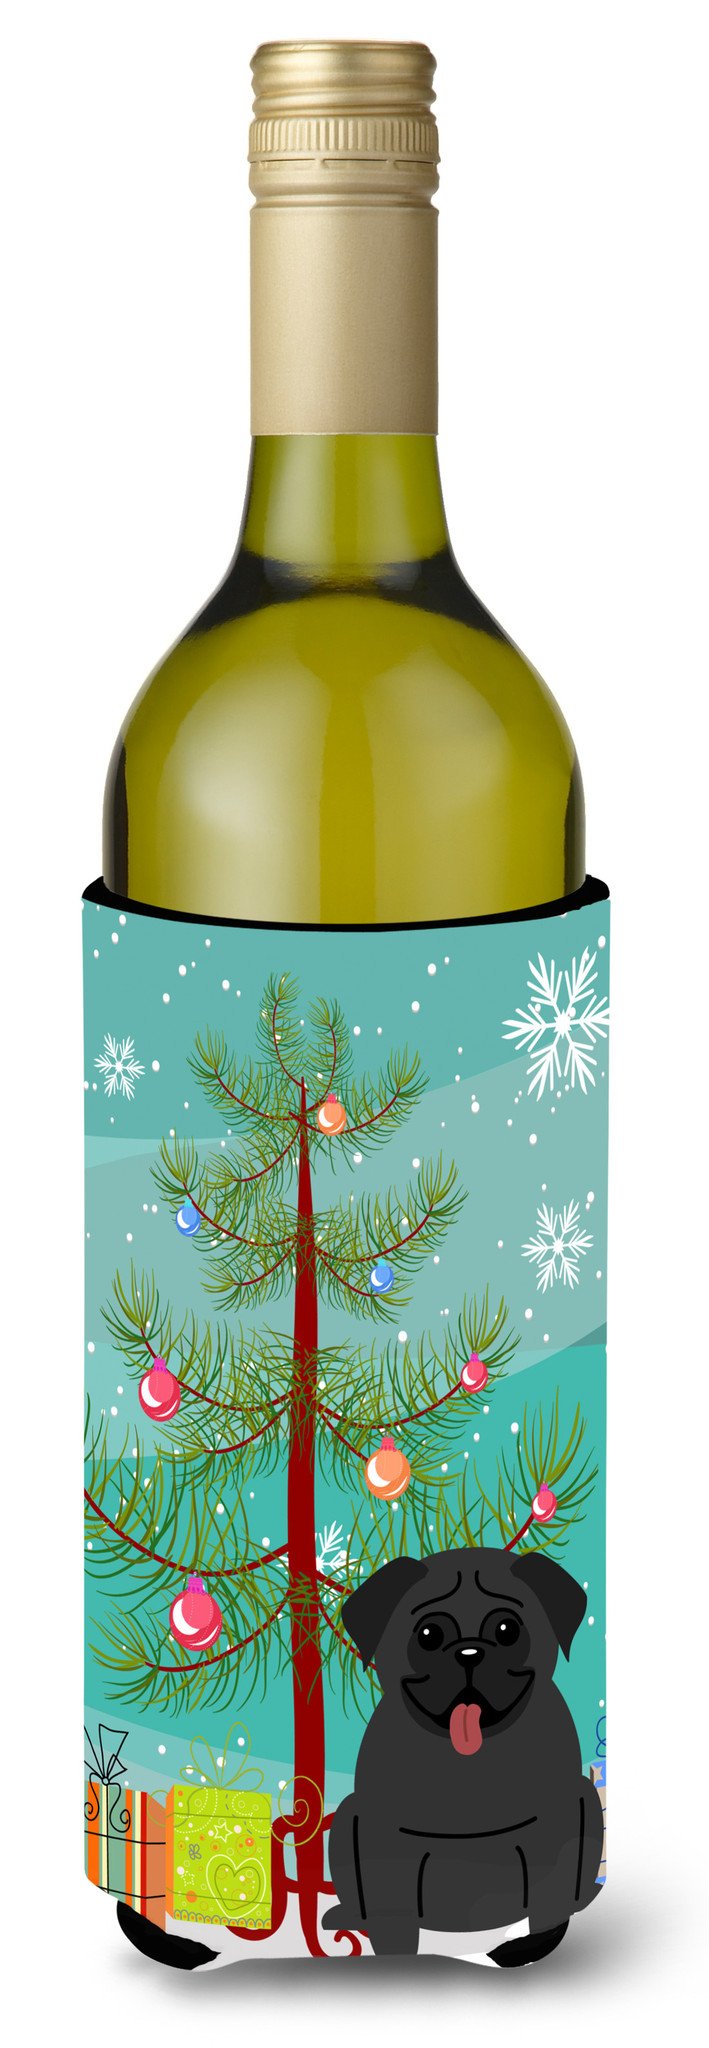 Merry Christmas Tree Pug Black Wine Bottle Beverge Insulator Hugger BB4131LITERK by Caroline's Treasures